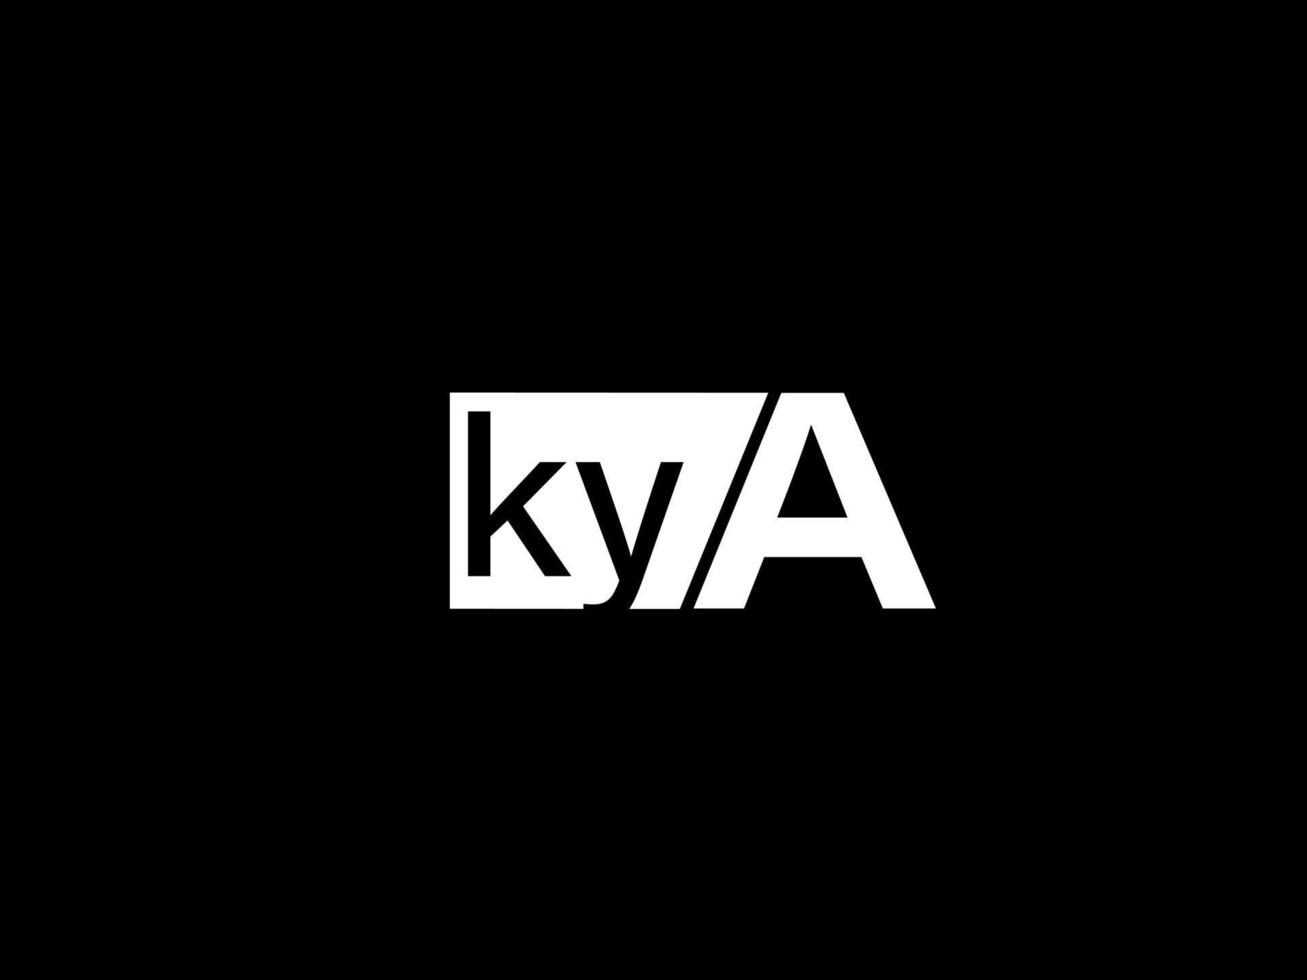 logo kya et art vectoriel de conception graphique, icônes isolées sur fond noir